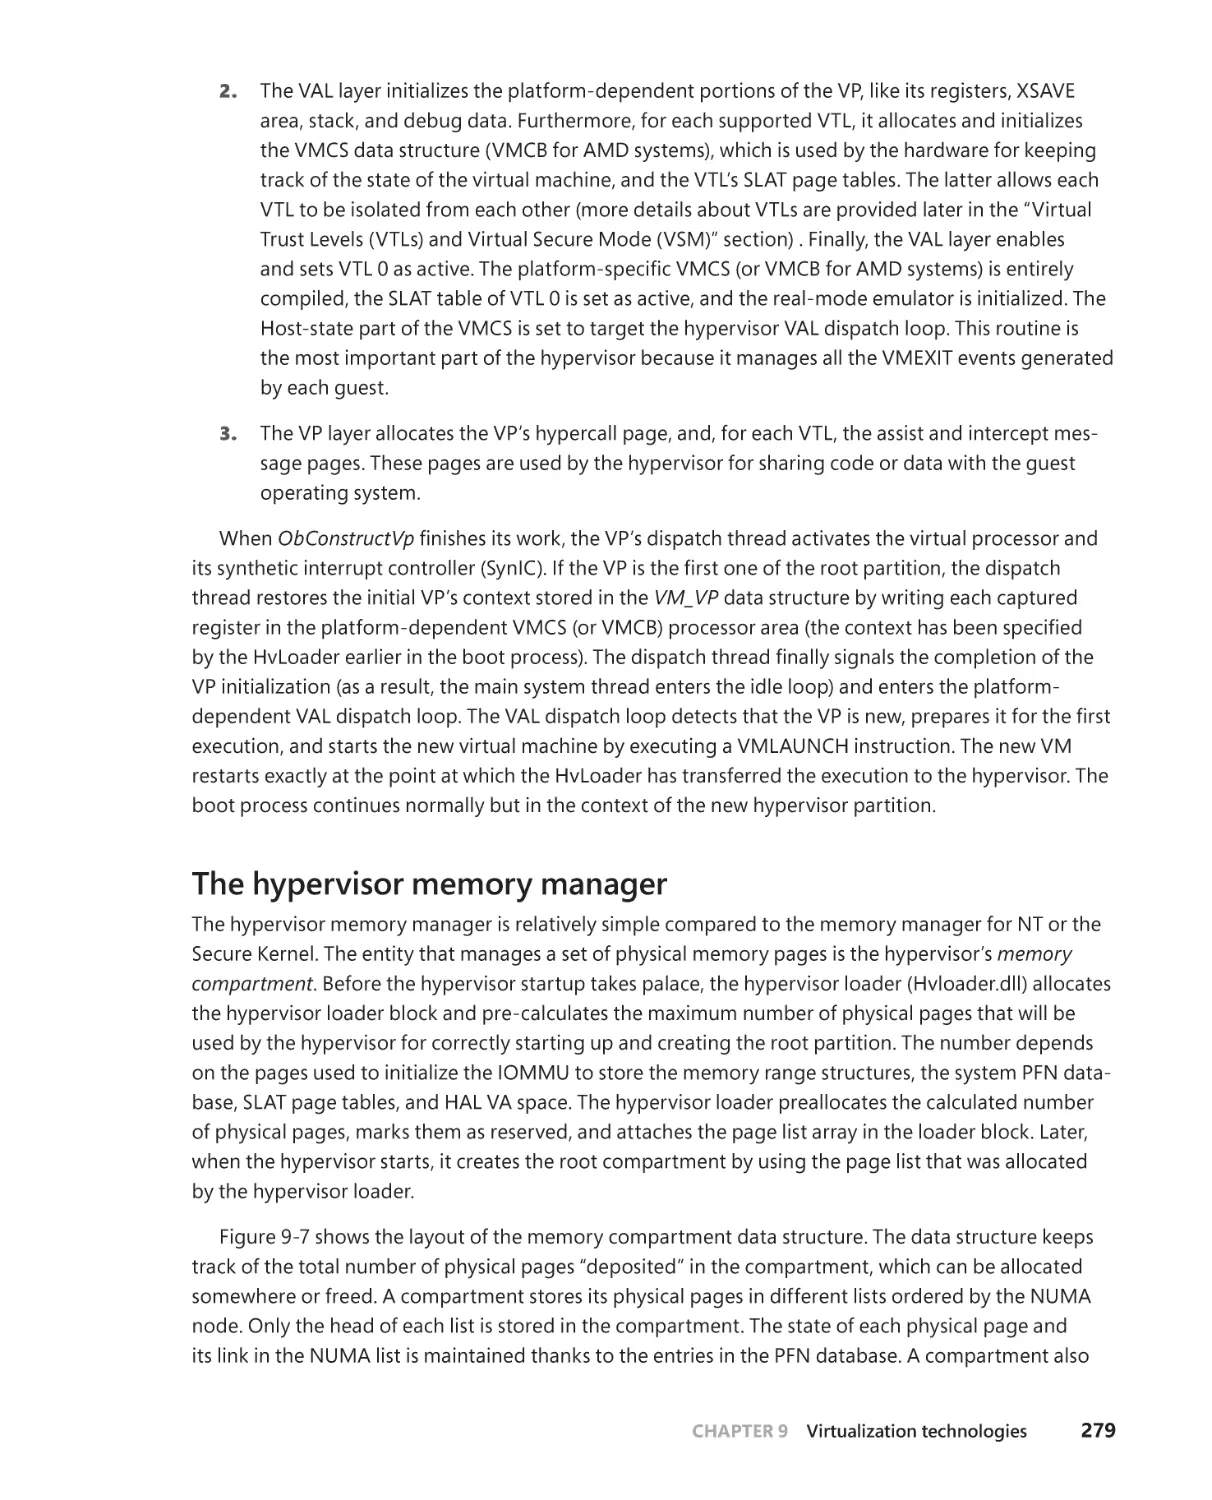 The hypervisor memory manager